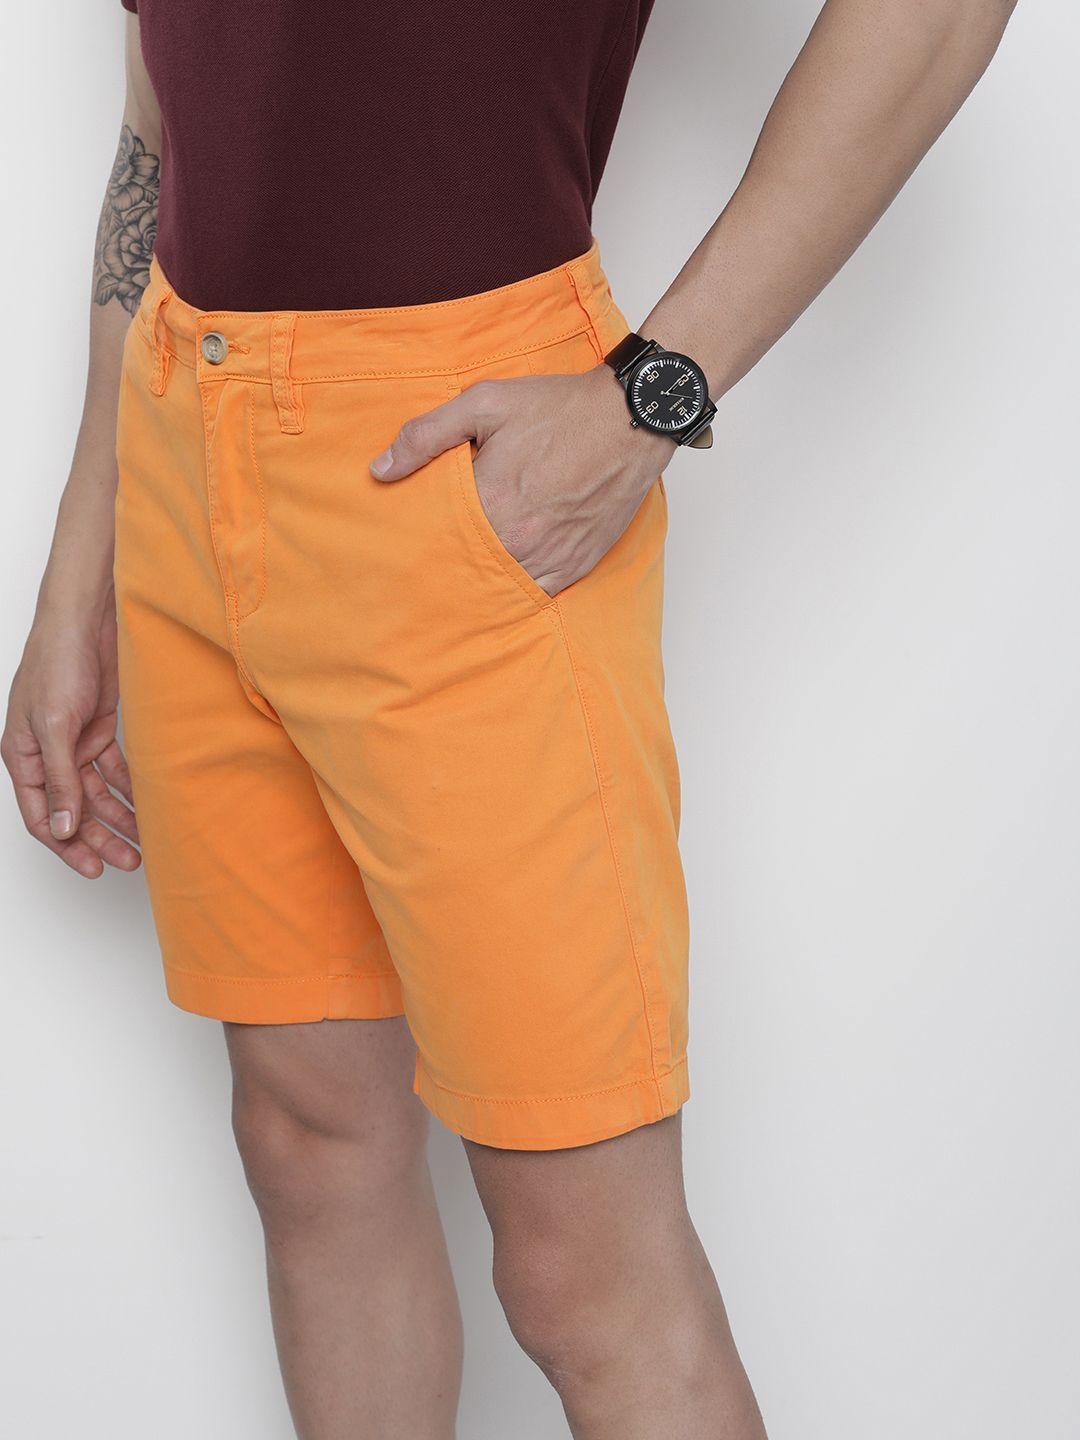 nautica men orange solid slim fit shorts